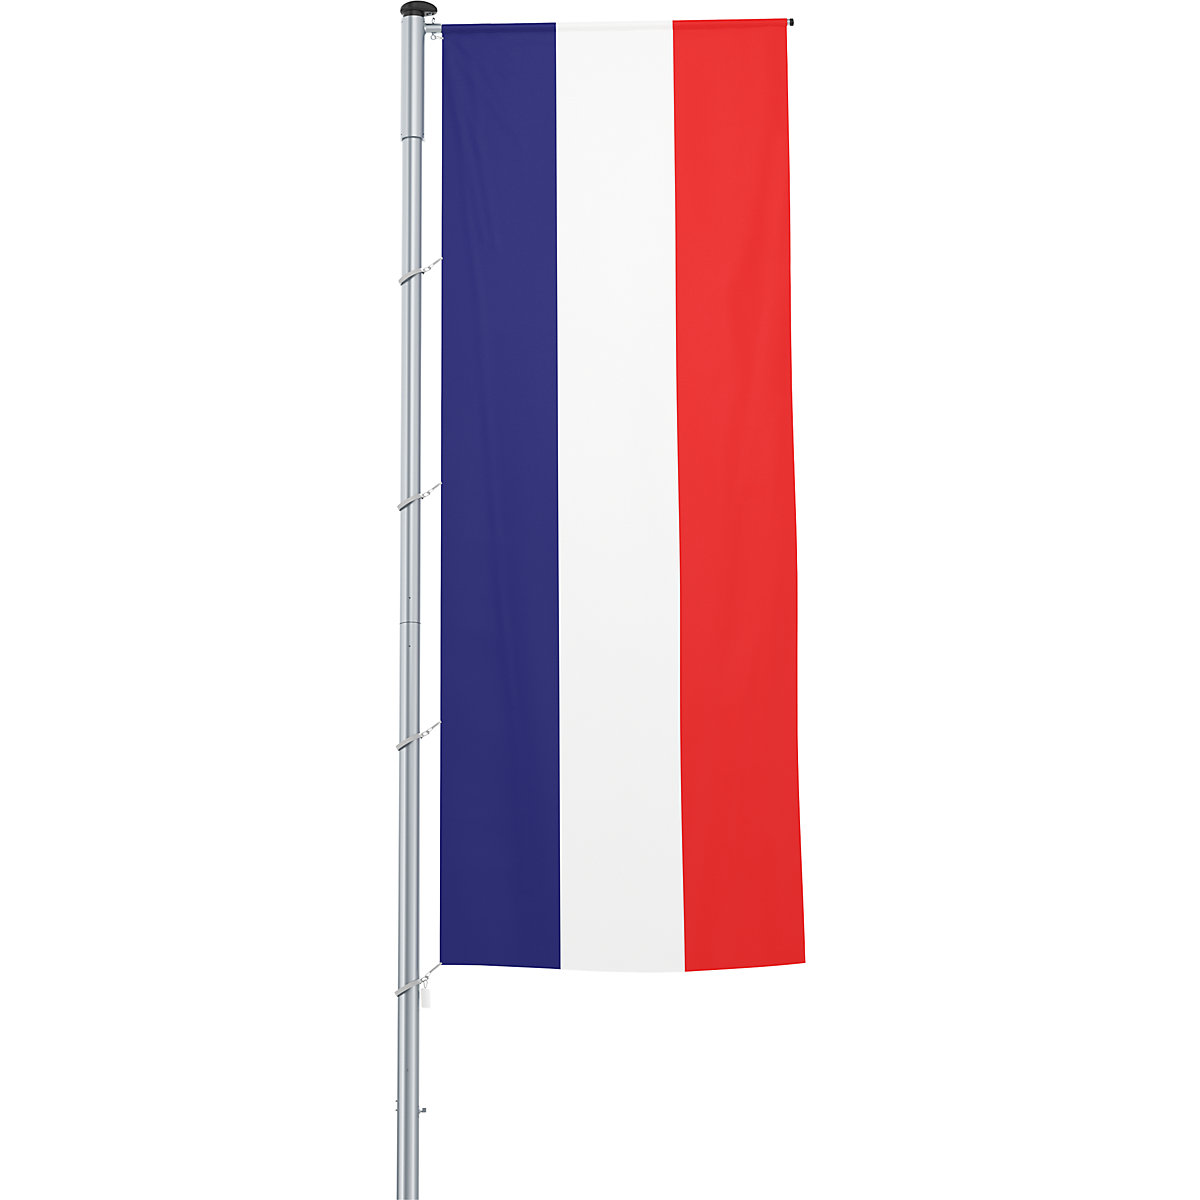 Vlajka na pozdĺžne upevnenie na stožiar/národná vlajka – Mannus, formát 1,2 x 3 m, Francúzsko-25